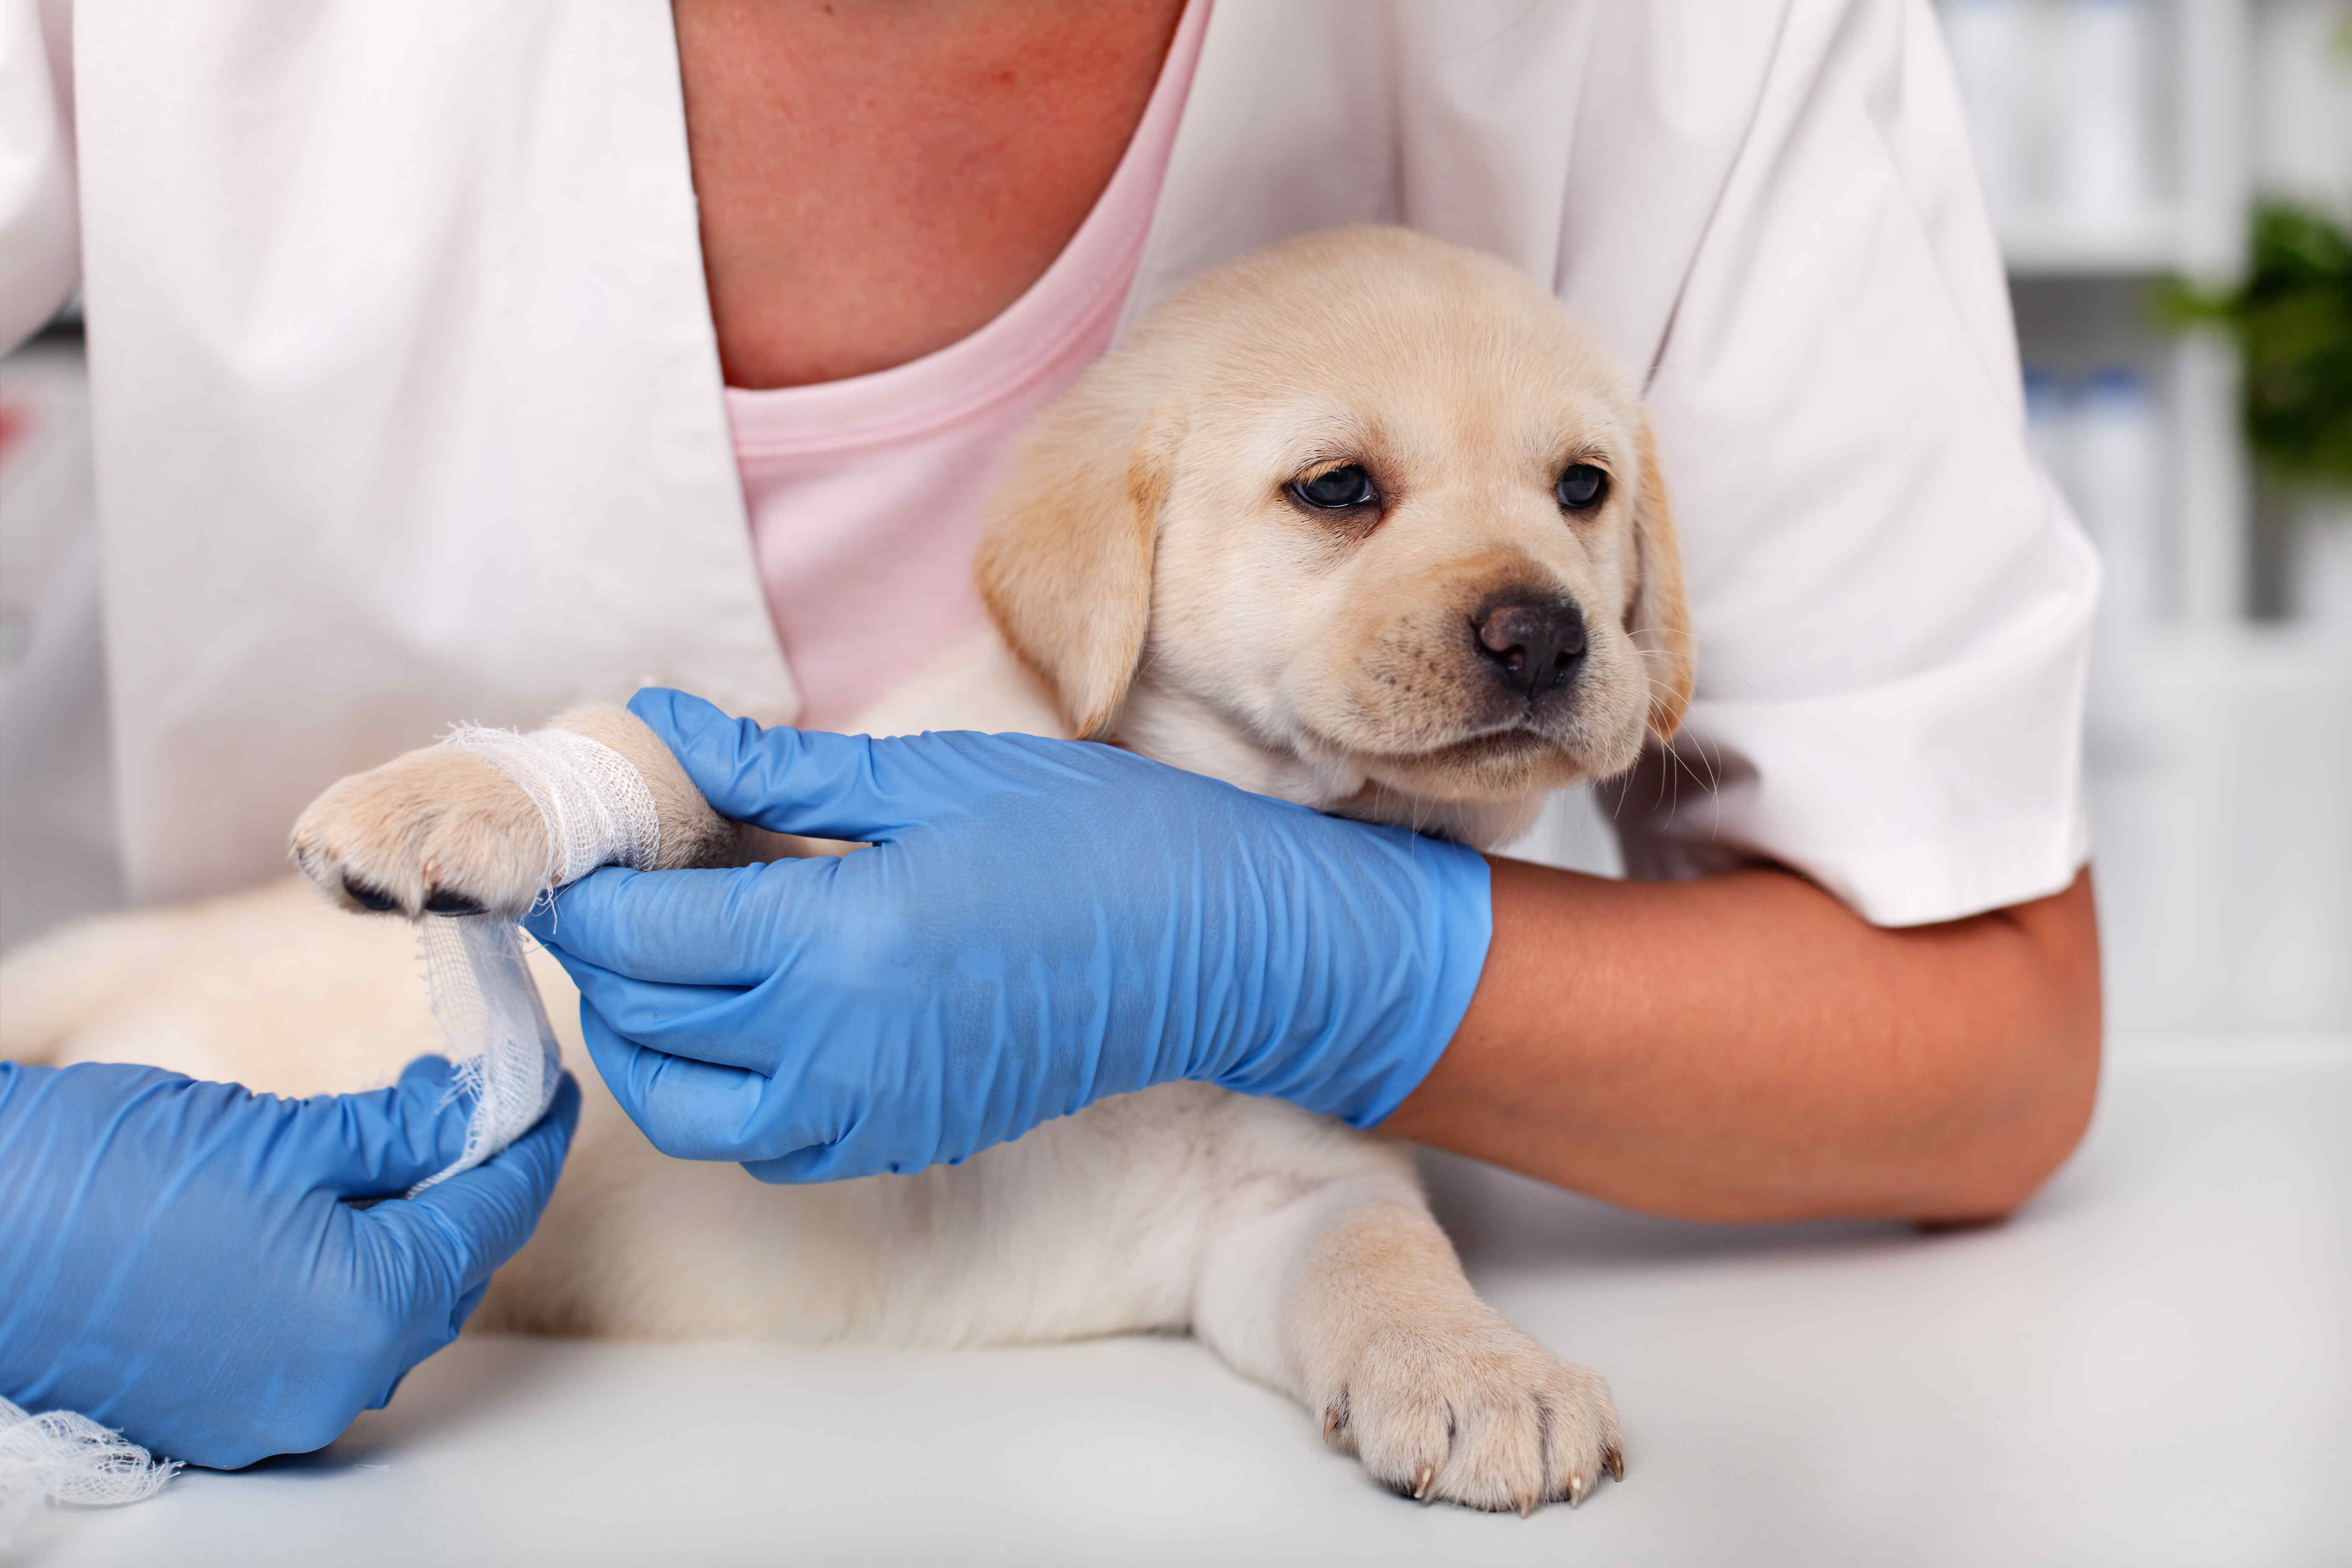 Erliquiose des Hundes: Erfahren Sie alles über die von Zecken übertragene Krankheit